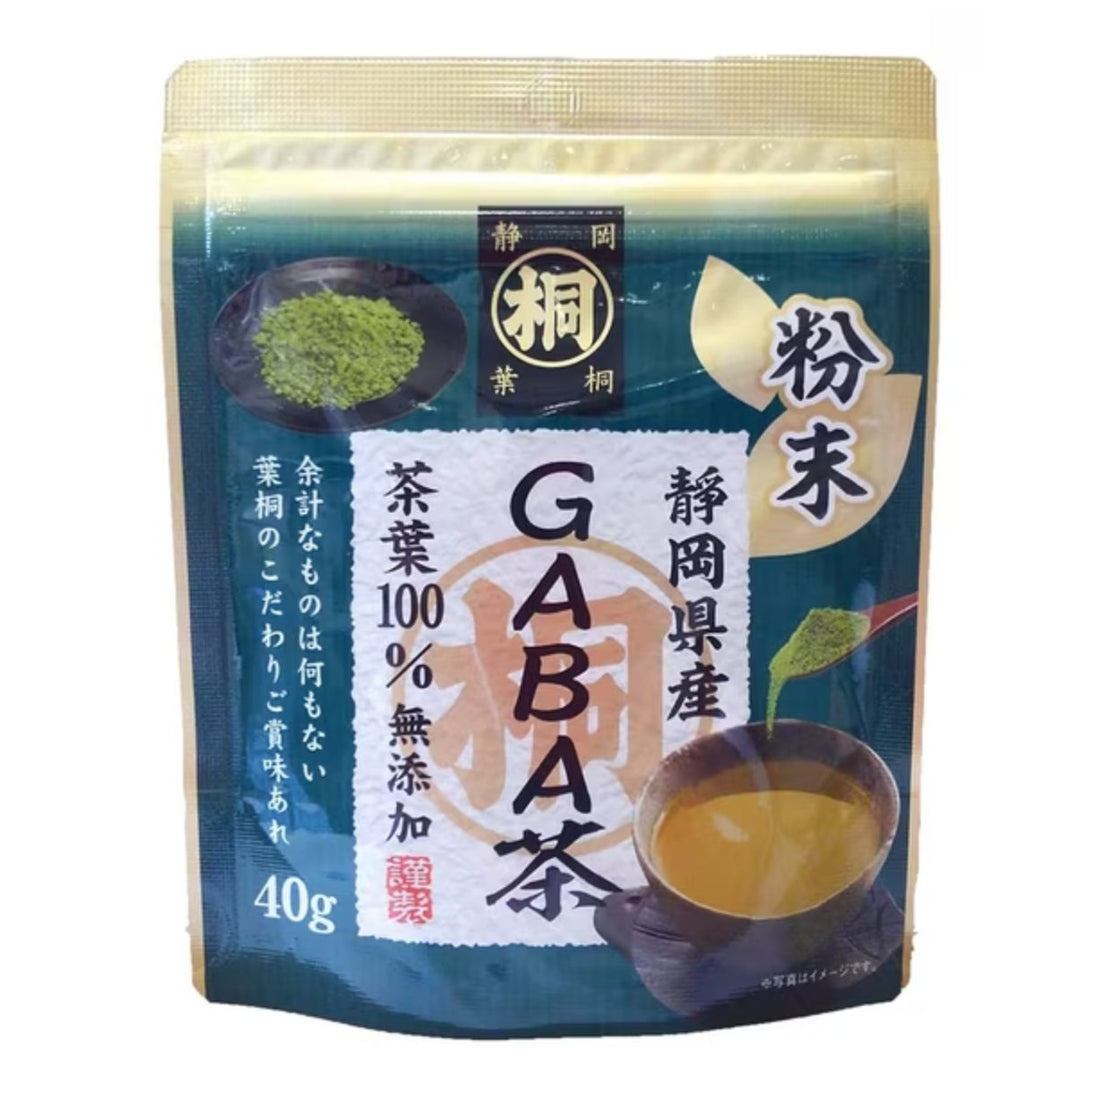 Hagiri Shizuoka Marutou Powder Gaba Tea 40g - NihonMura